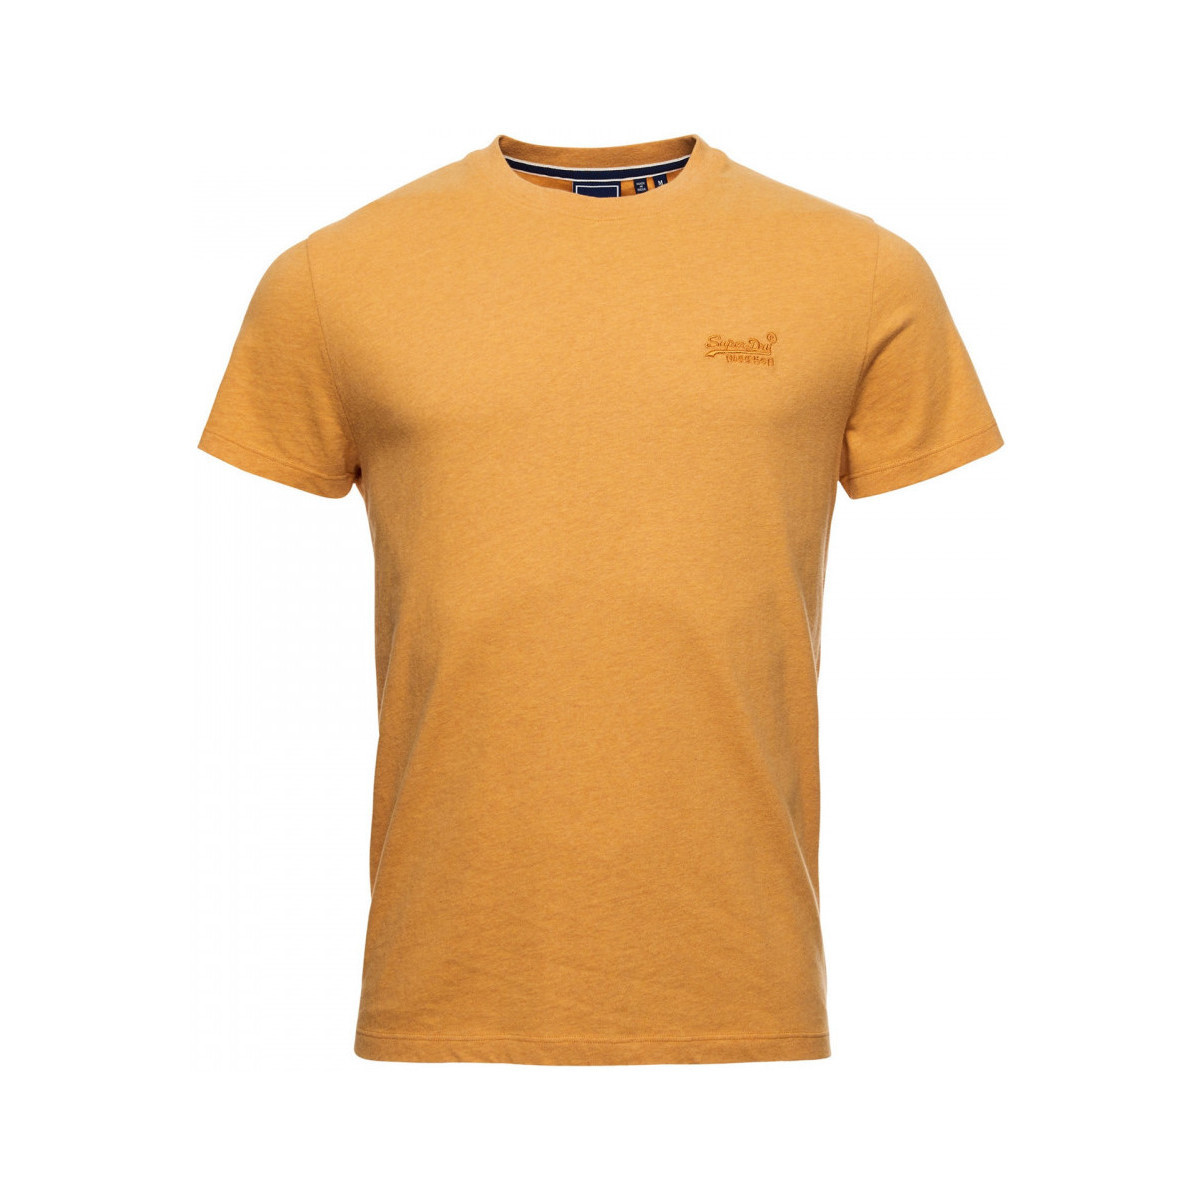 Îmbracaminte Bărbați Tricouri & Tricouri Polo Superdry Vintage logo emb portocaliu